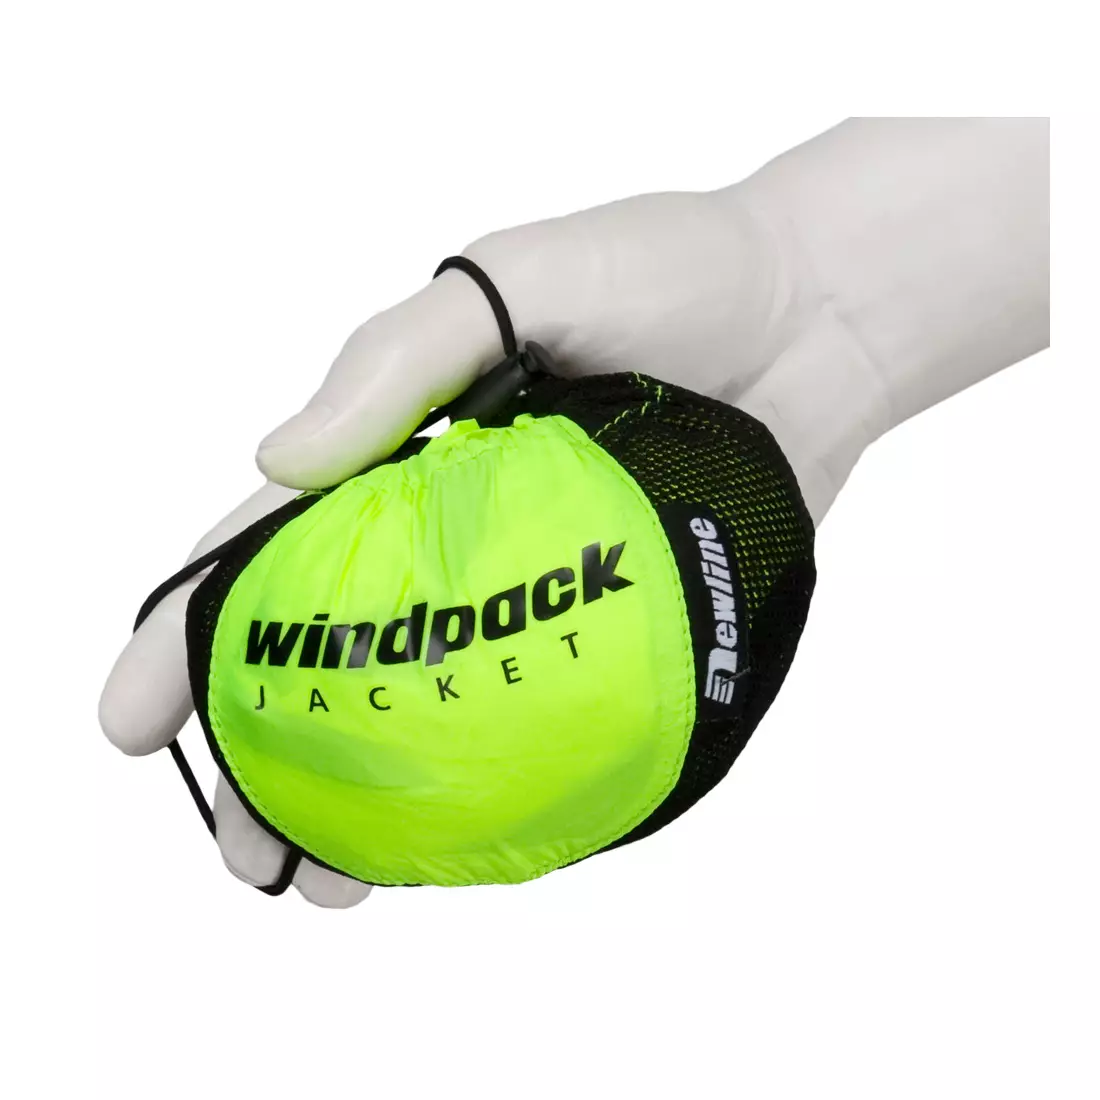 NEWLINE WINDPACK JACKET - ultralehká sportovní větrovka 14176-090, barva: Fluor